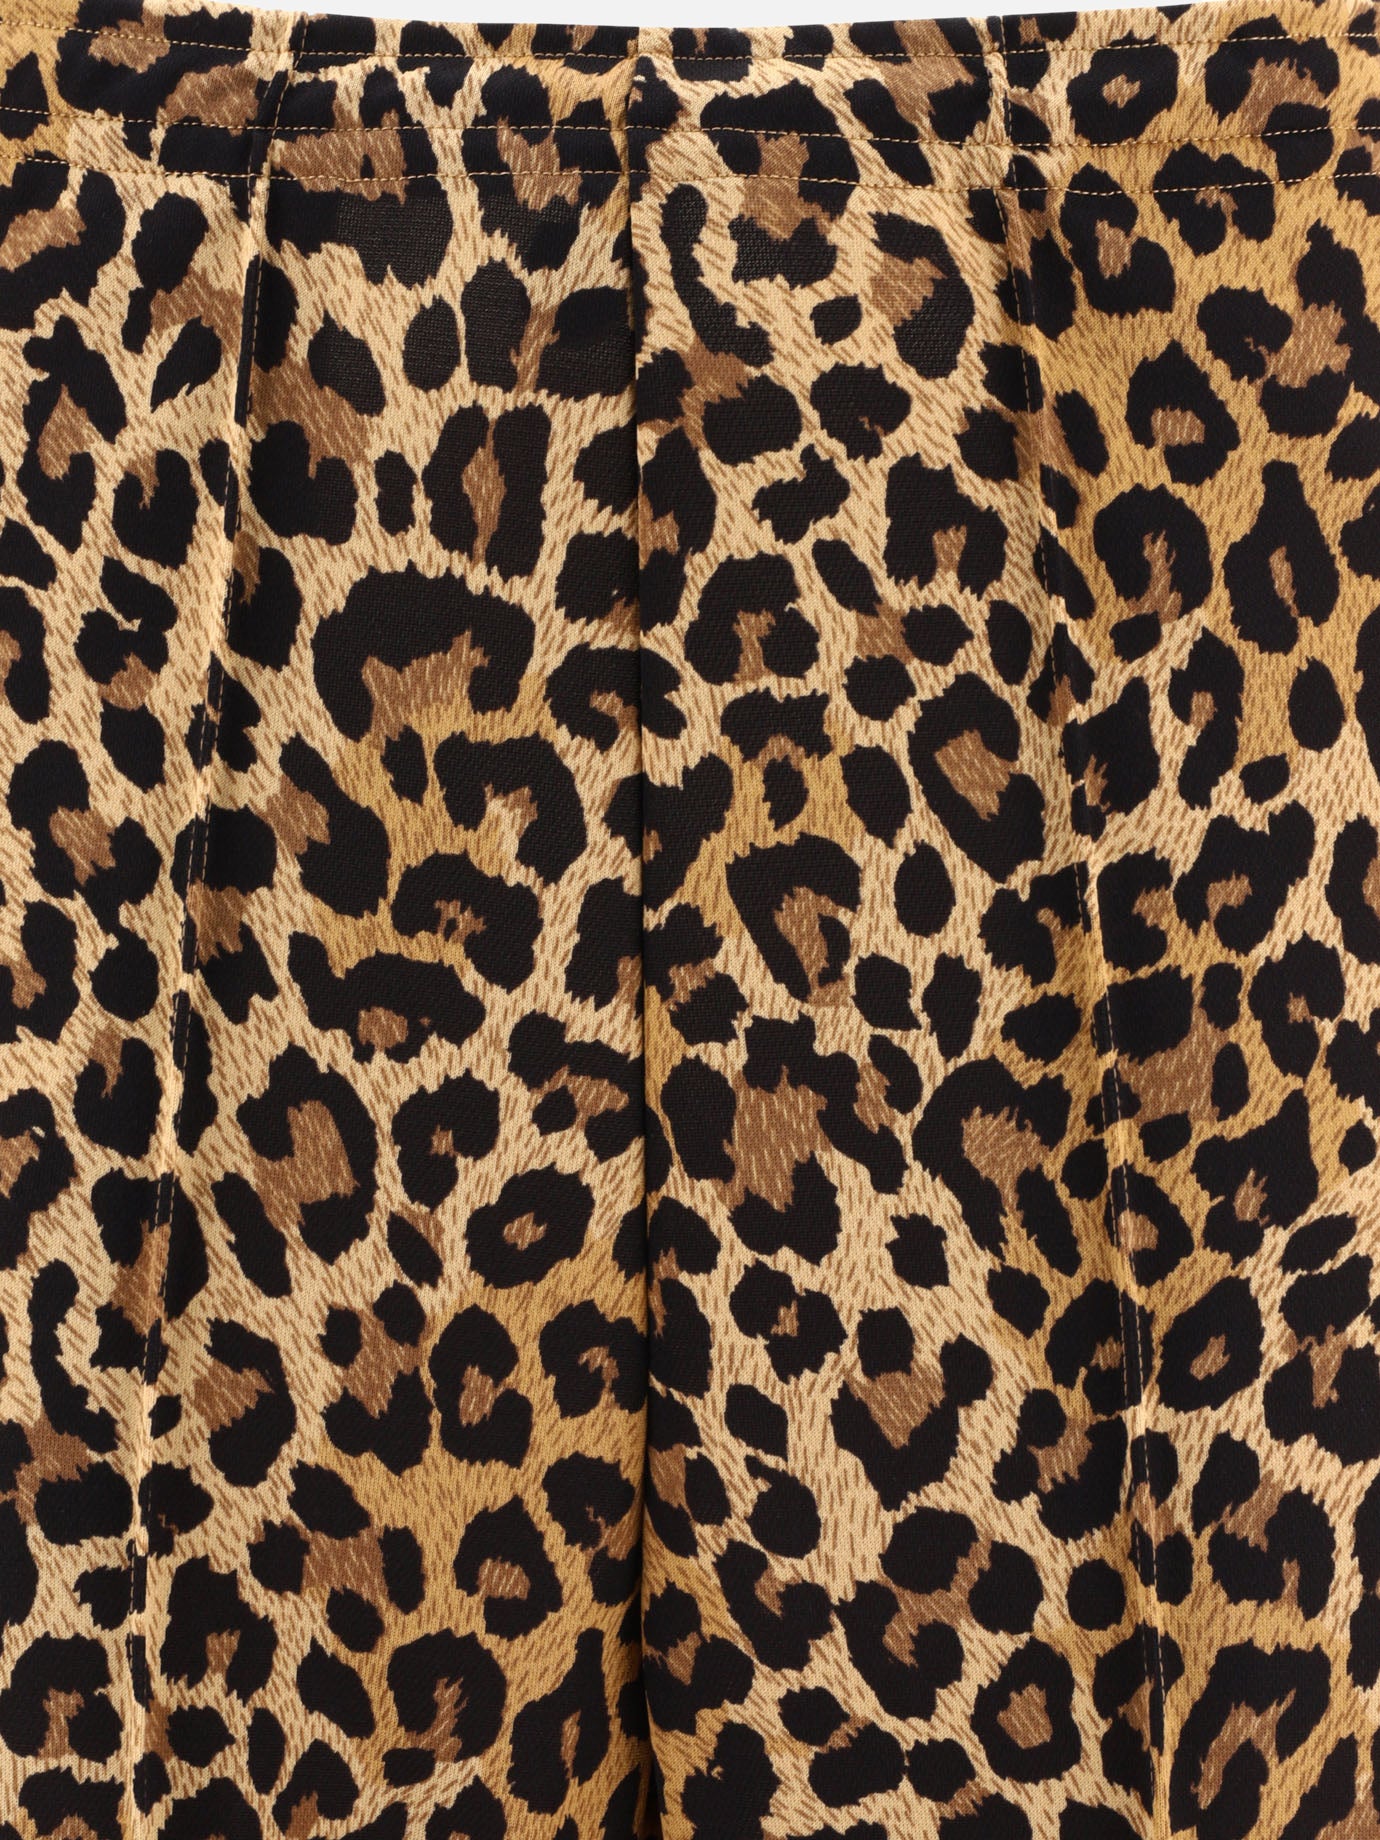 "Leopard" trousers